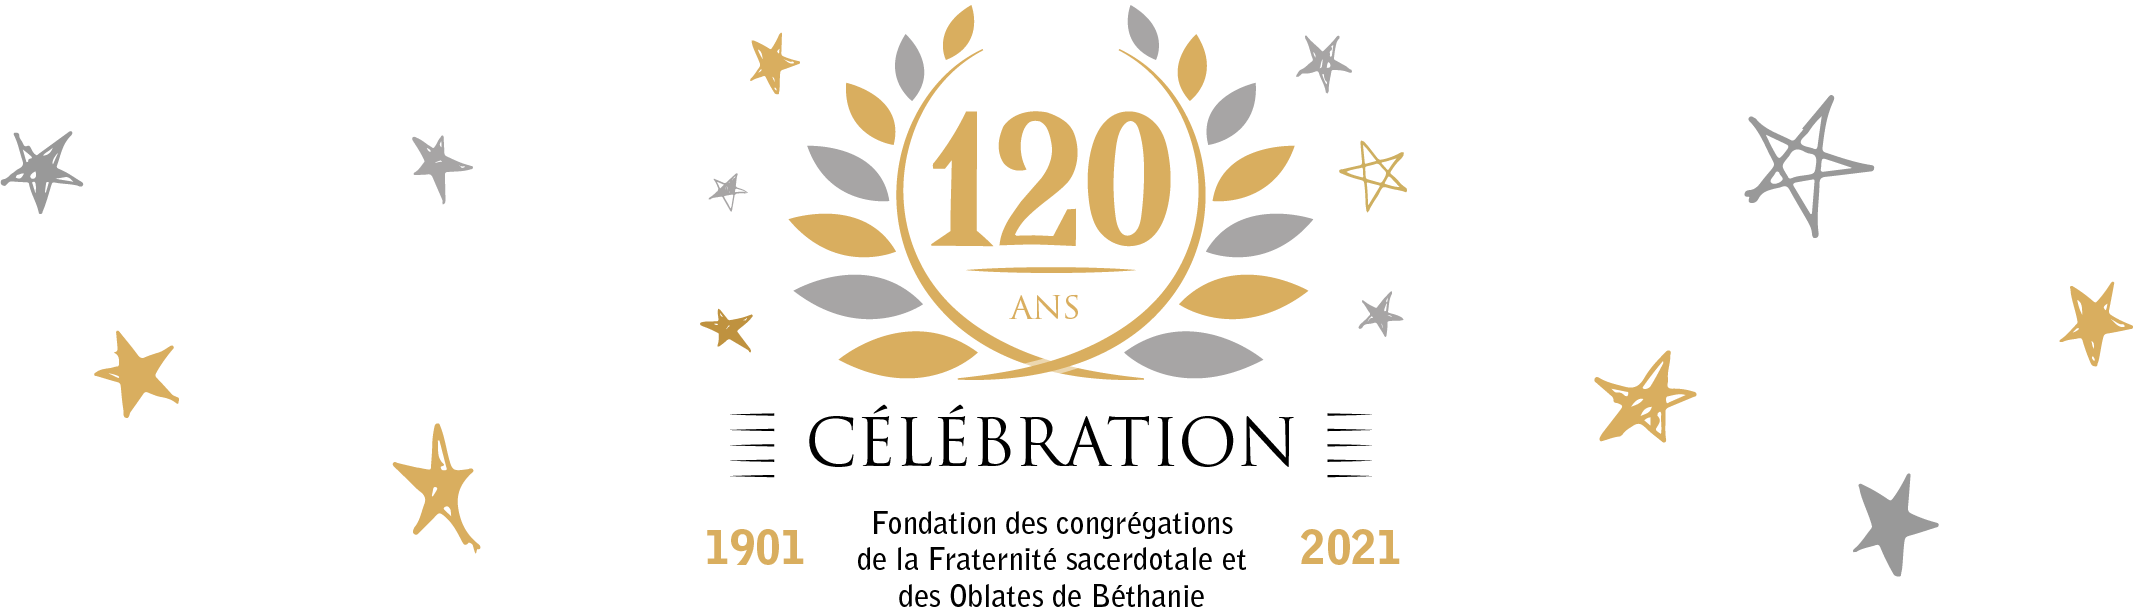 Logo du 120ième anniversaire de Fondation des congrégations de la Fraternité Sacerdotale et des Oblates de Béthanie